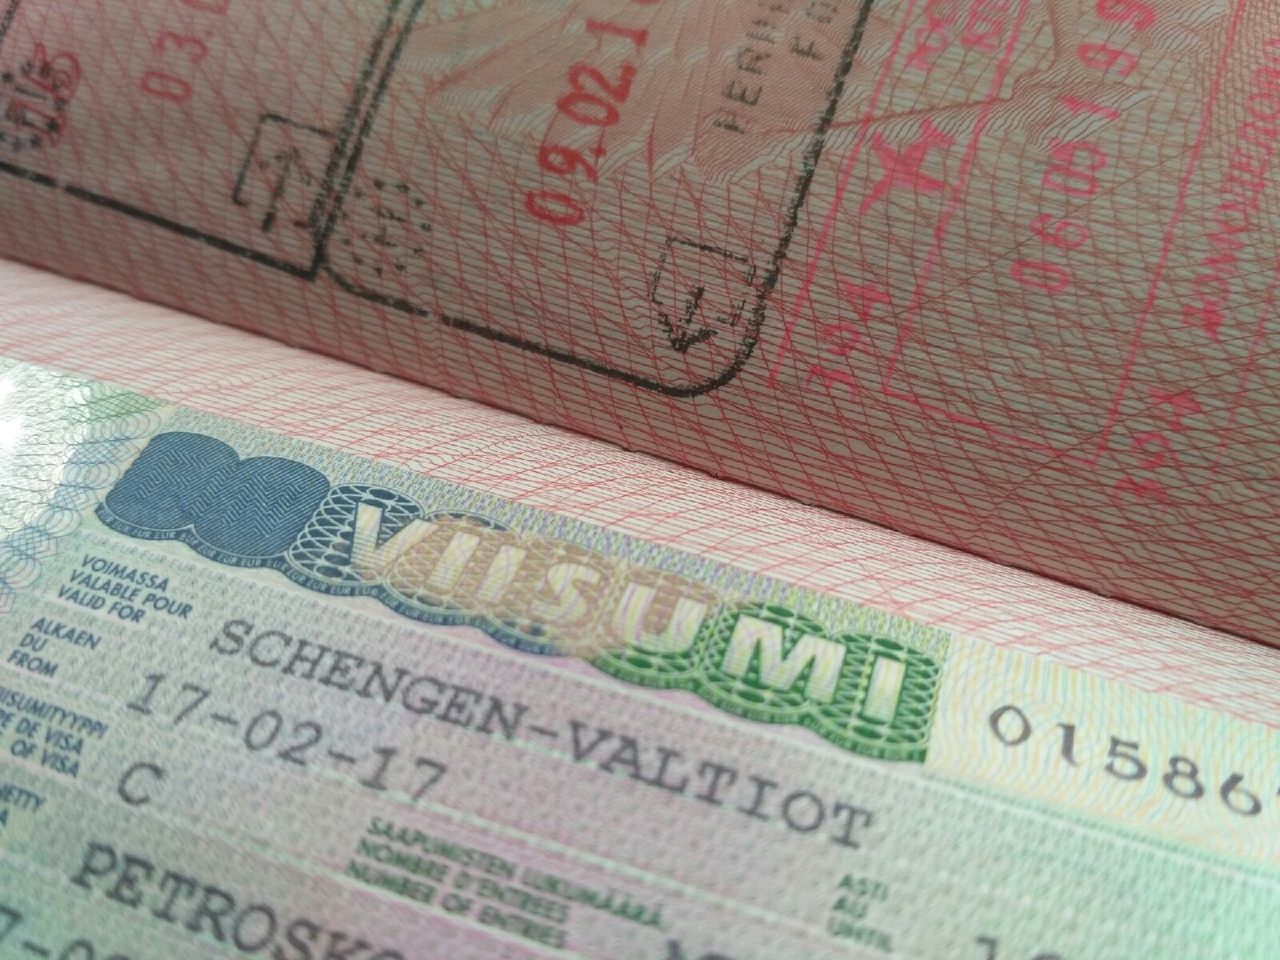 Poikkeusryhmiin kuuluvat henkilöt voivat hakea viisumia muun muassa Petroskoin viisumikeskuksessa. Se on avoinna asiakkaille maanantaisin, tiistaisin ja keskiviikkoisin kello 9–14 välisenä aikana. Kuva: Oma Media